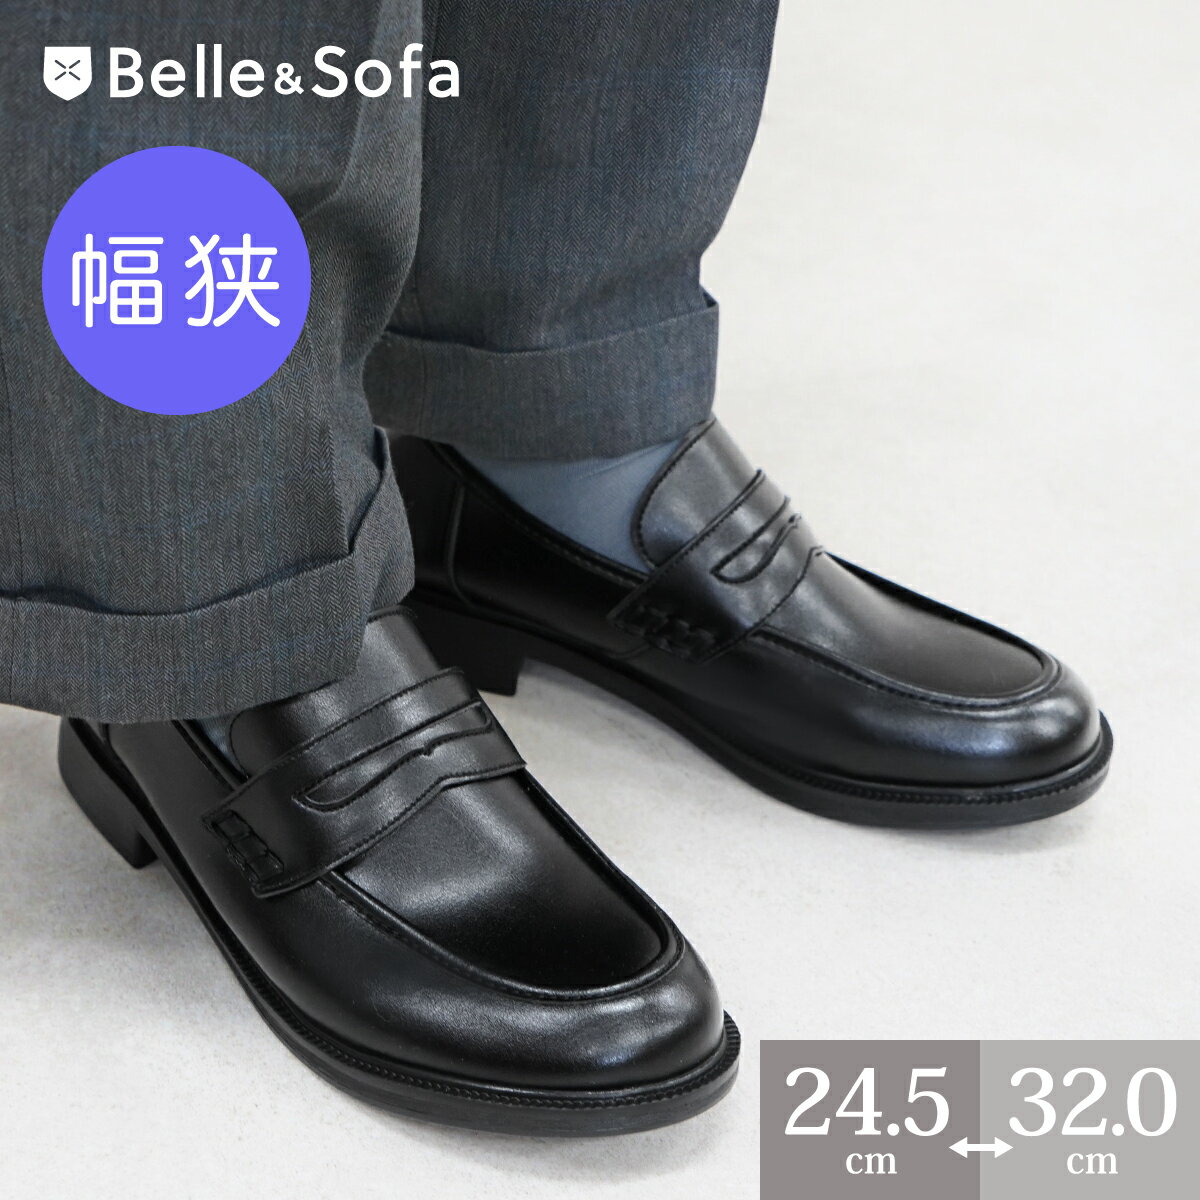 【幅狭特注】コインローファー メンズ 通勤 学生靴 紳士靴 日本製 ★A6408 特注代700円(税別)でオーダーメイドのよう…